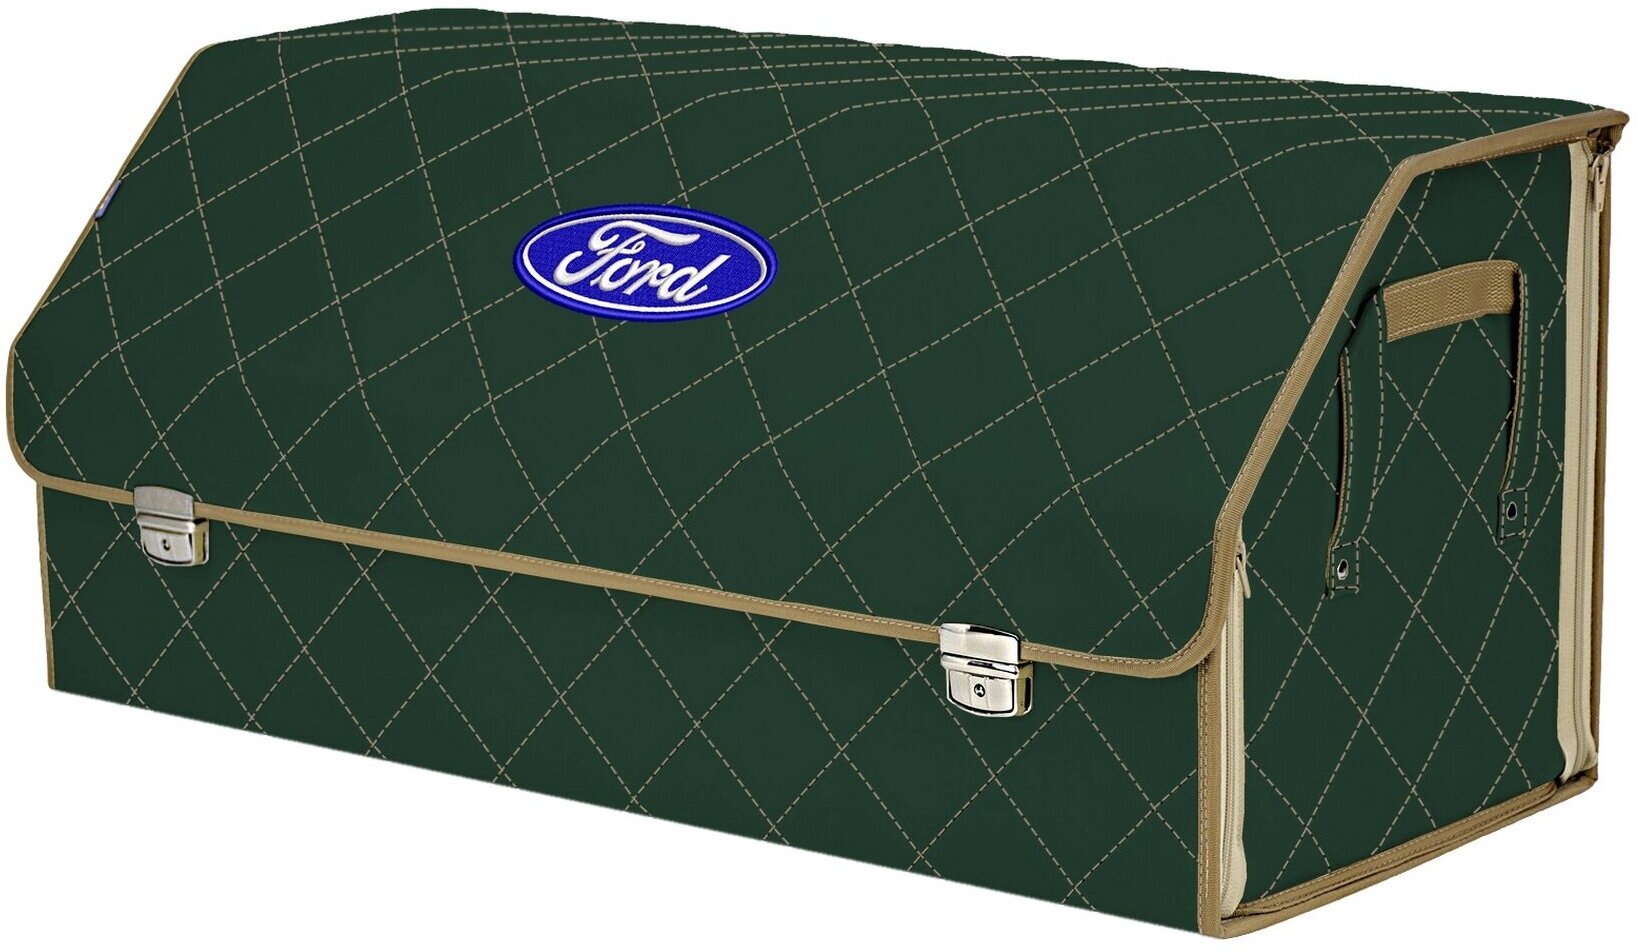 Органайзер-саквояж в багажник "Союз Премиум" (размер XXL). Цвет: зеленый с бежевой прострочкой Ромб и вышивкой Ford (Форд).